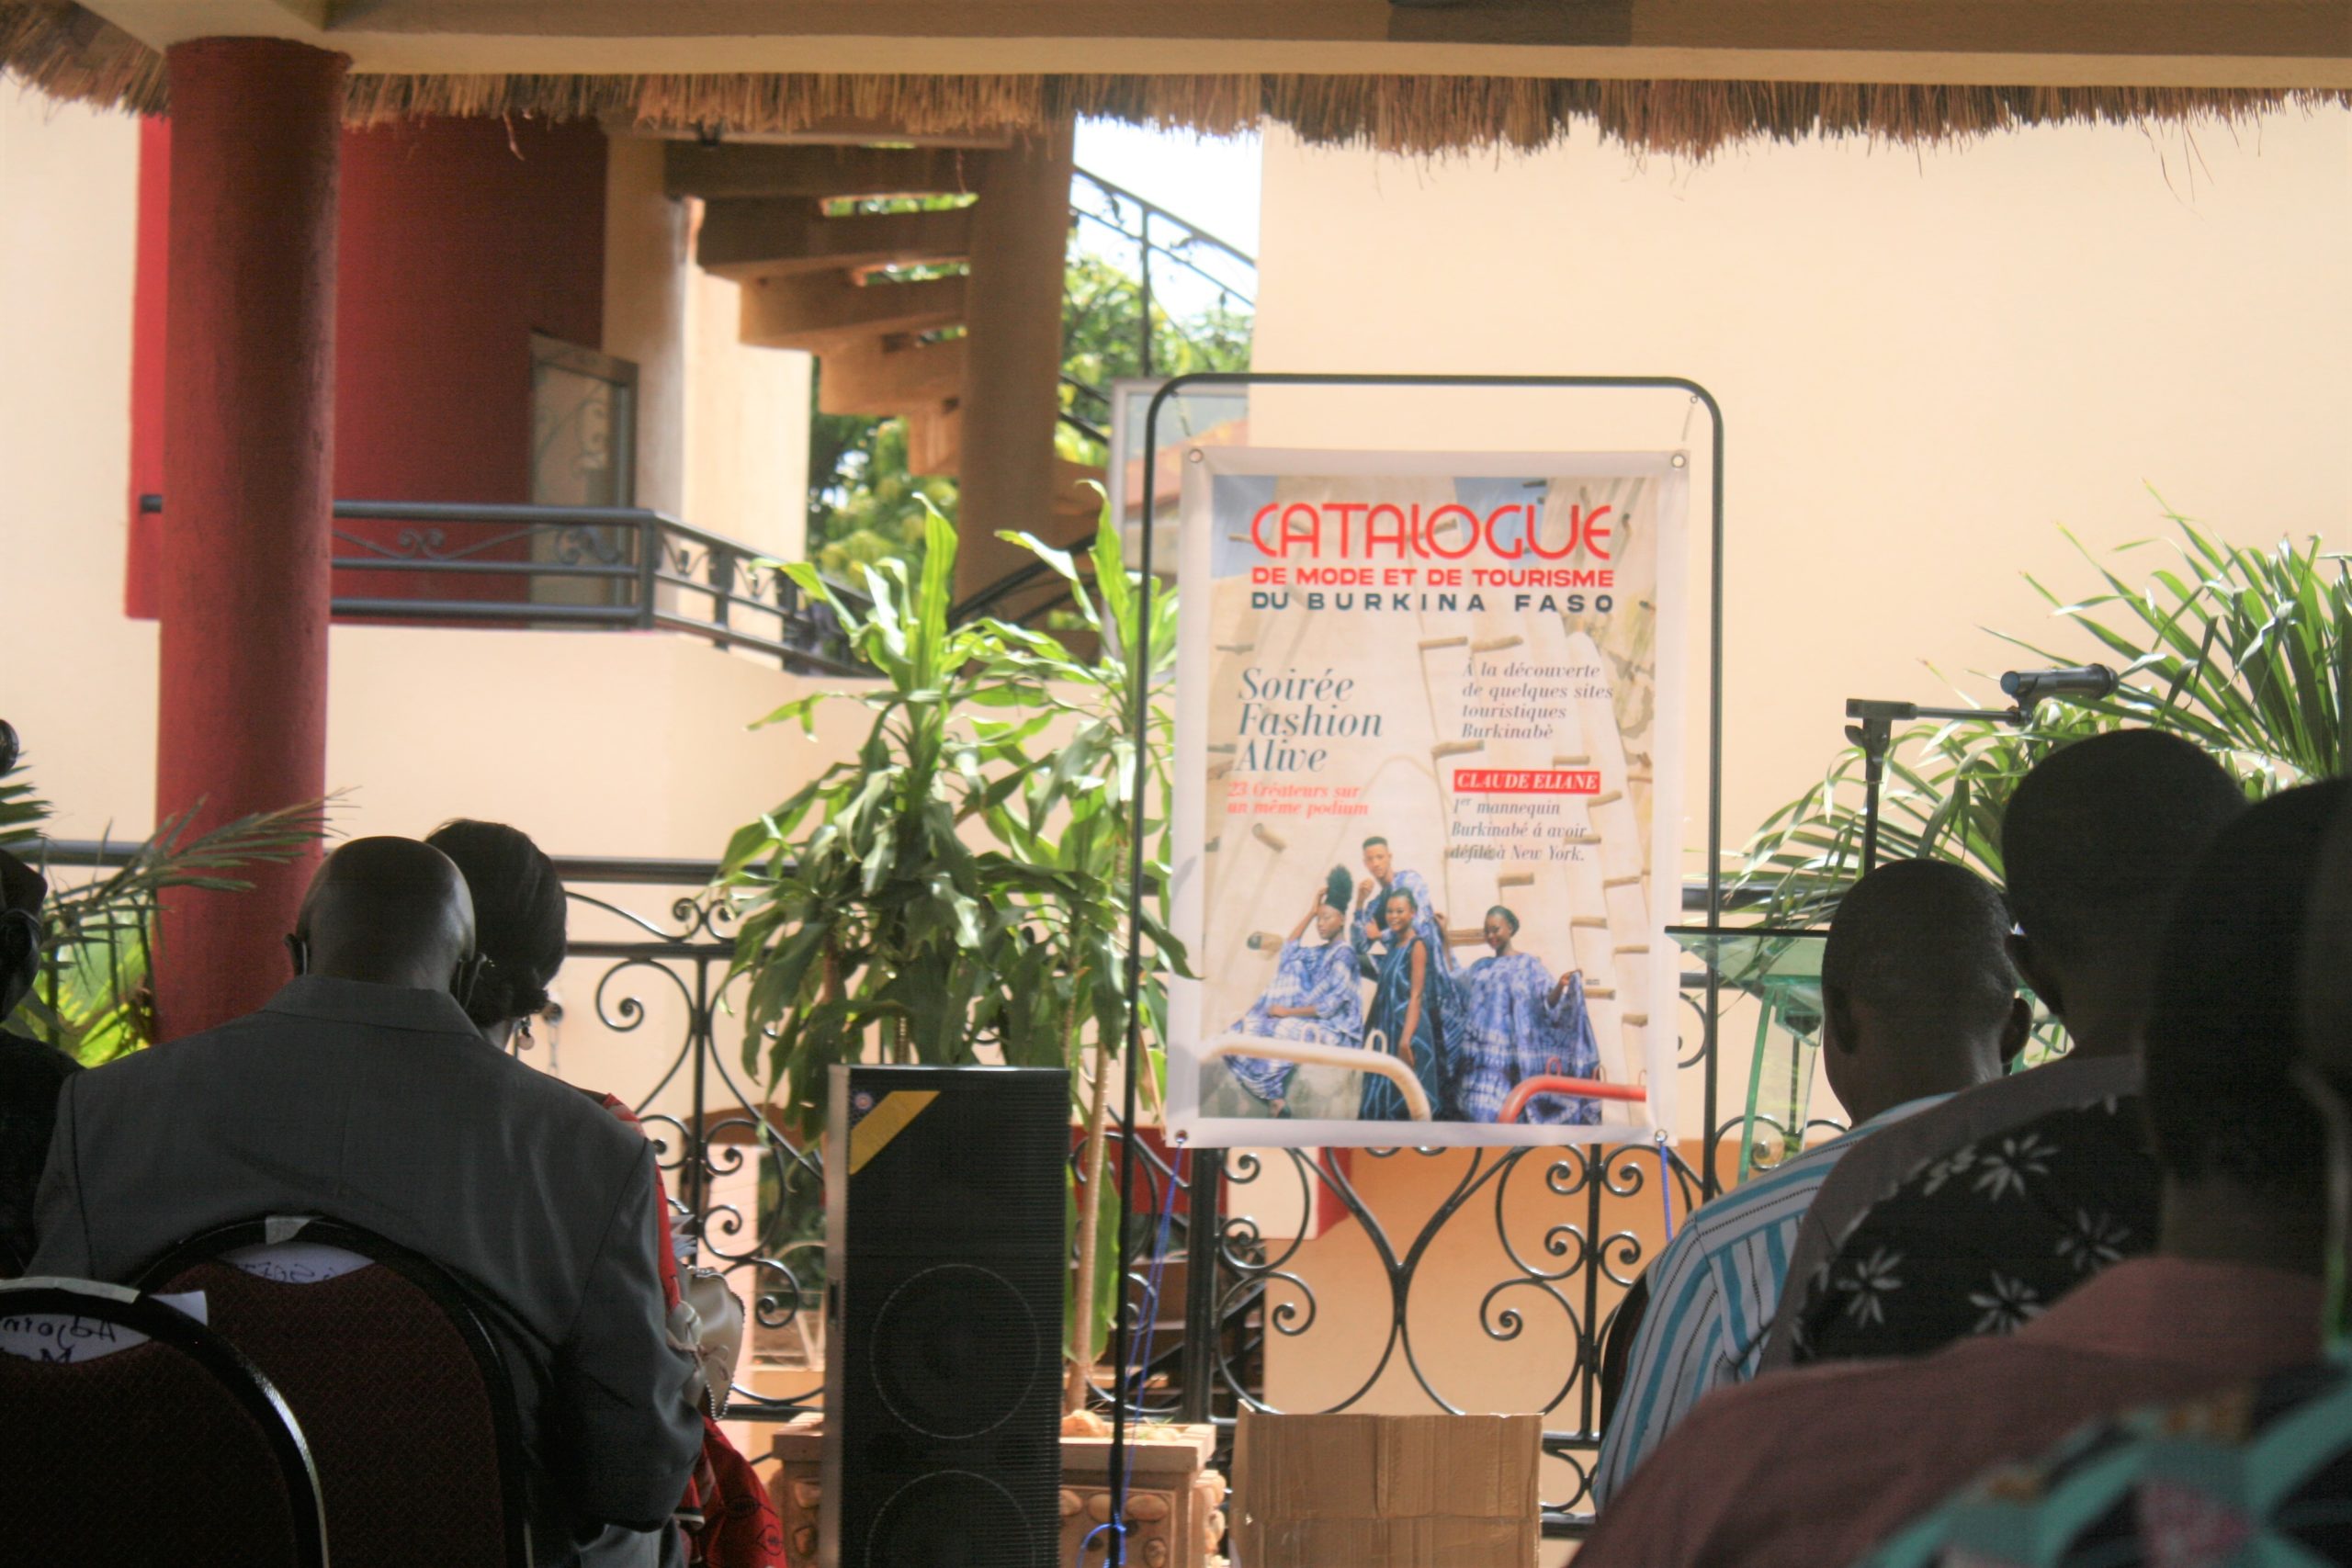  Tourisme : Bobo Dioulasso accueille la 2e étape du lancement du catalogue de mode et de tourisme du Burkina Faso